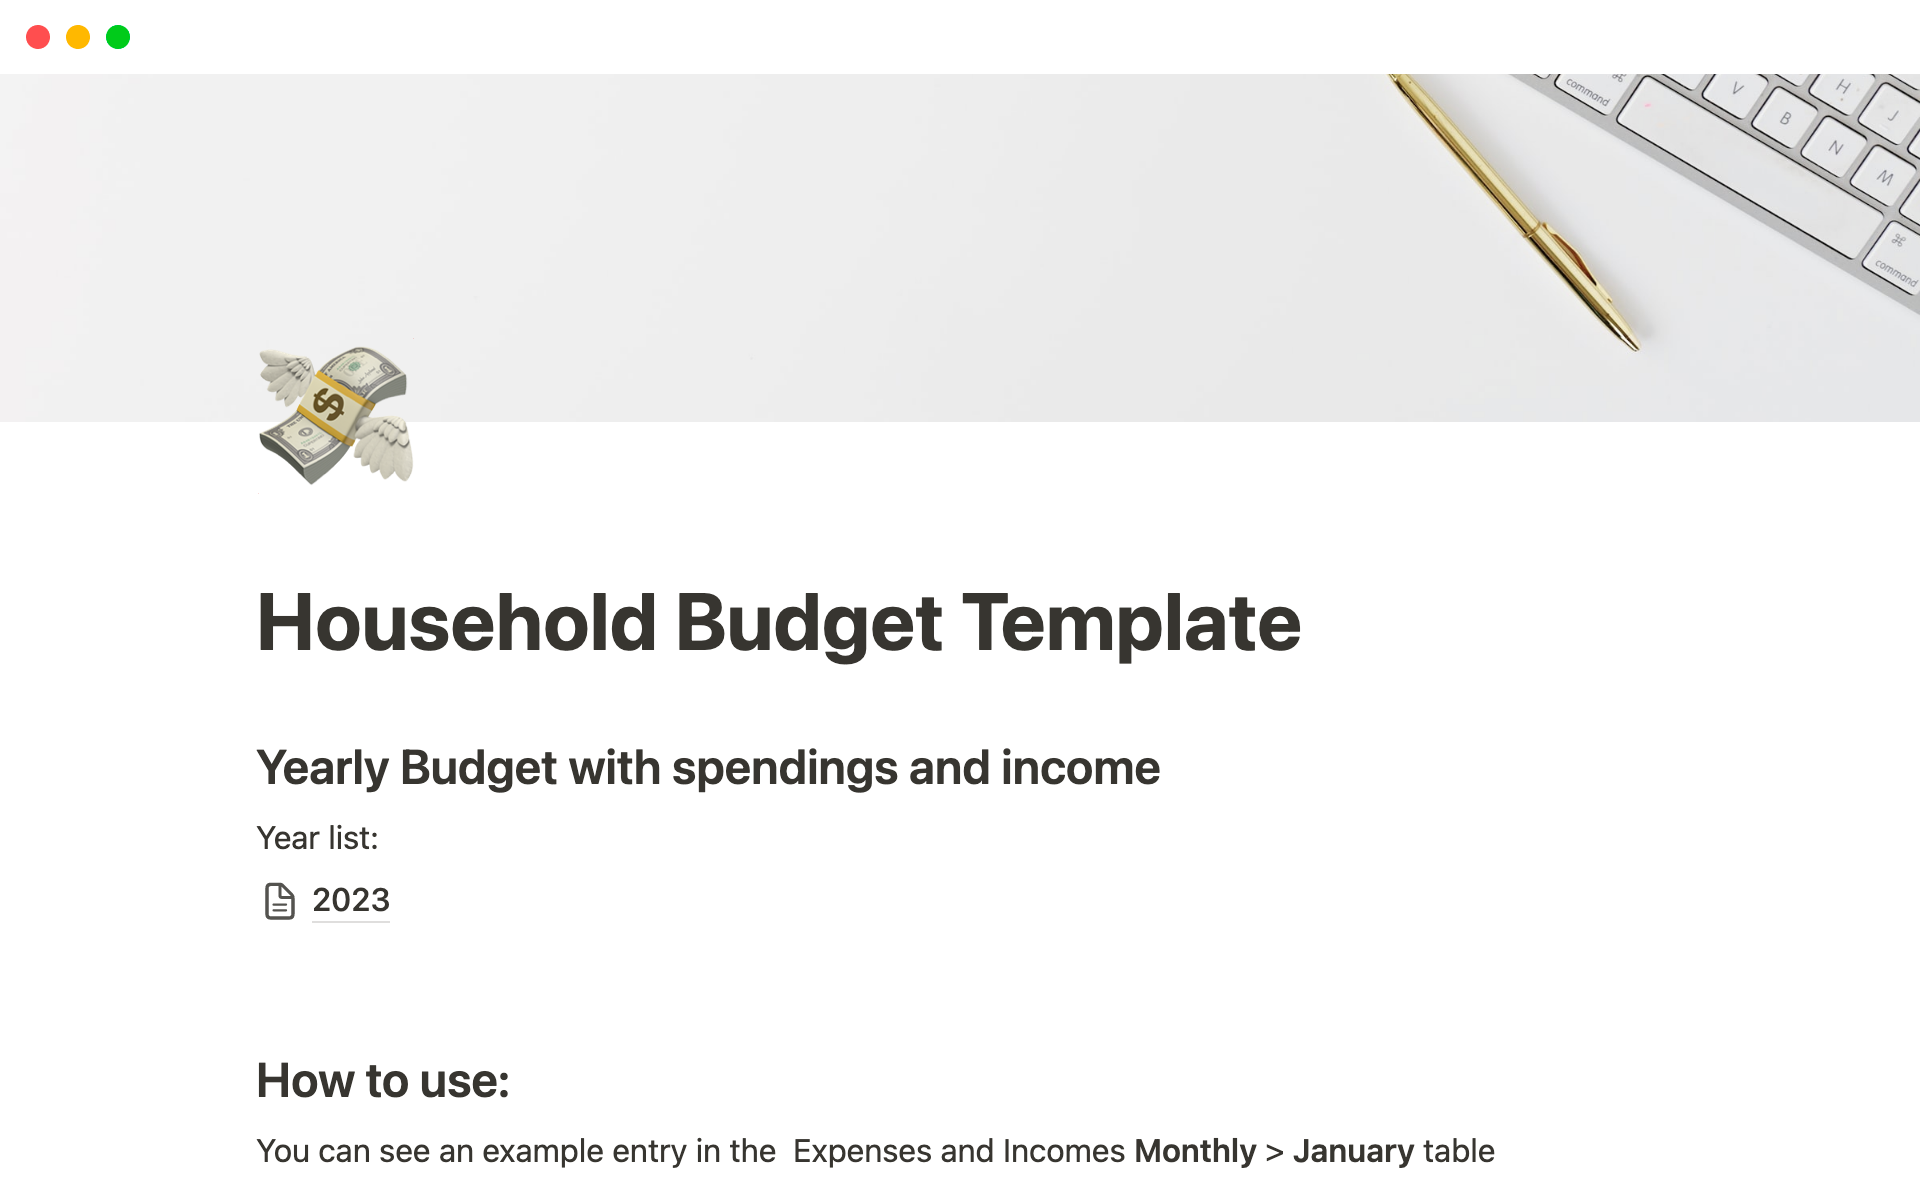 Uma prévia do modelo para Household Budget